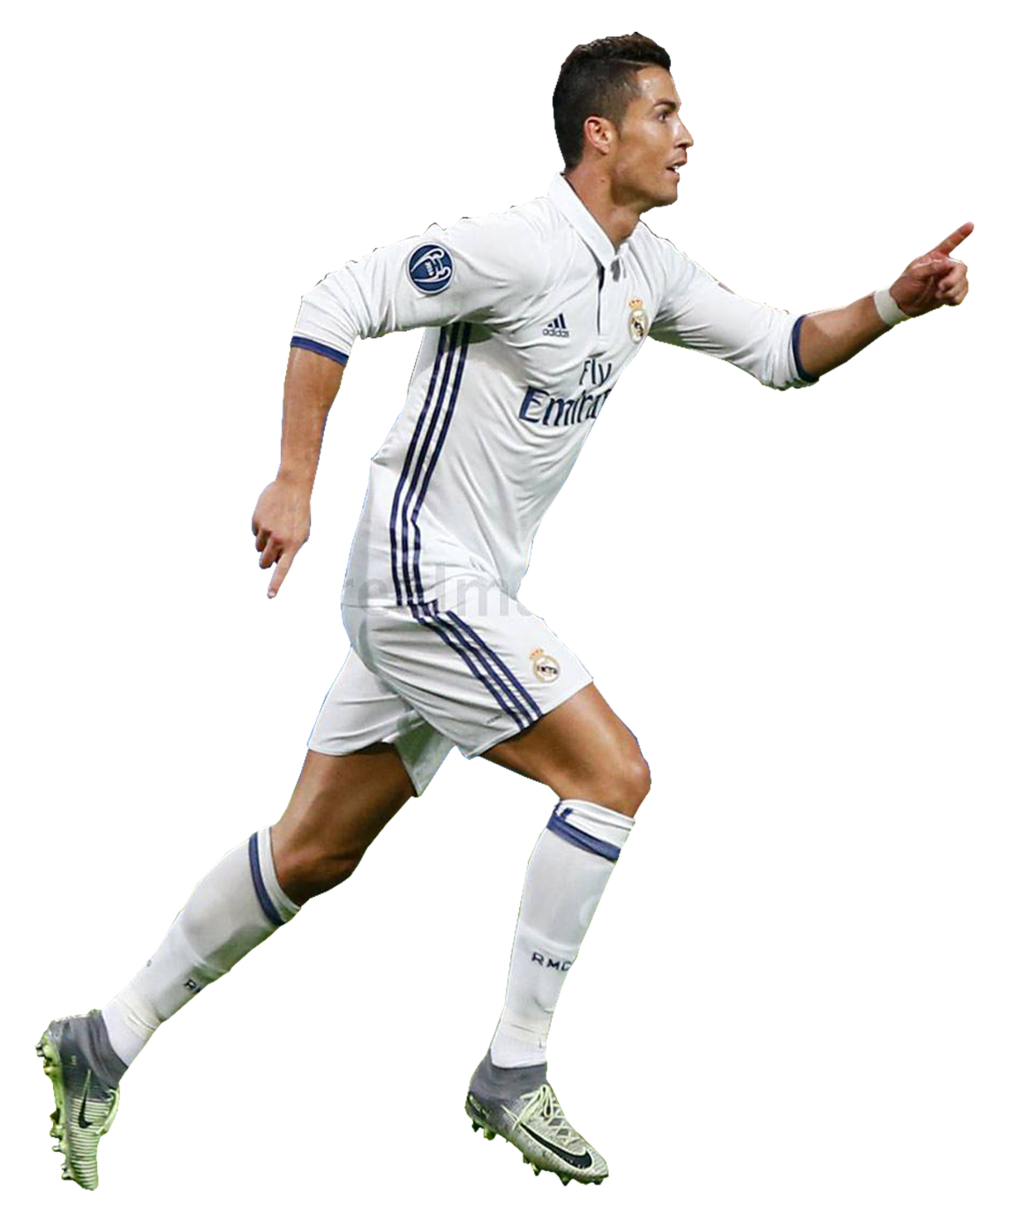 Cristiano Ronaldo Png